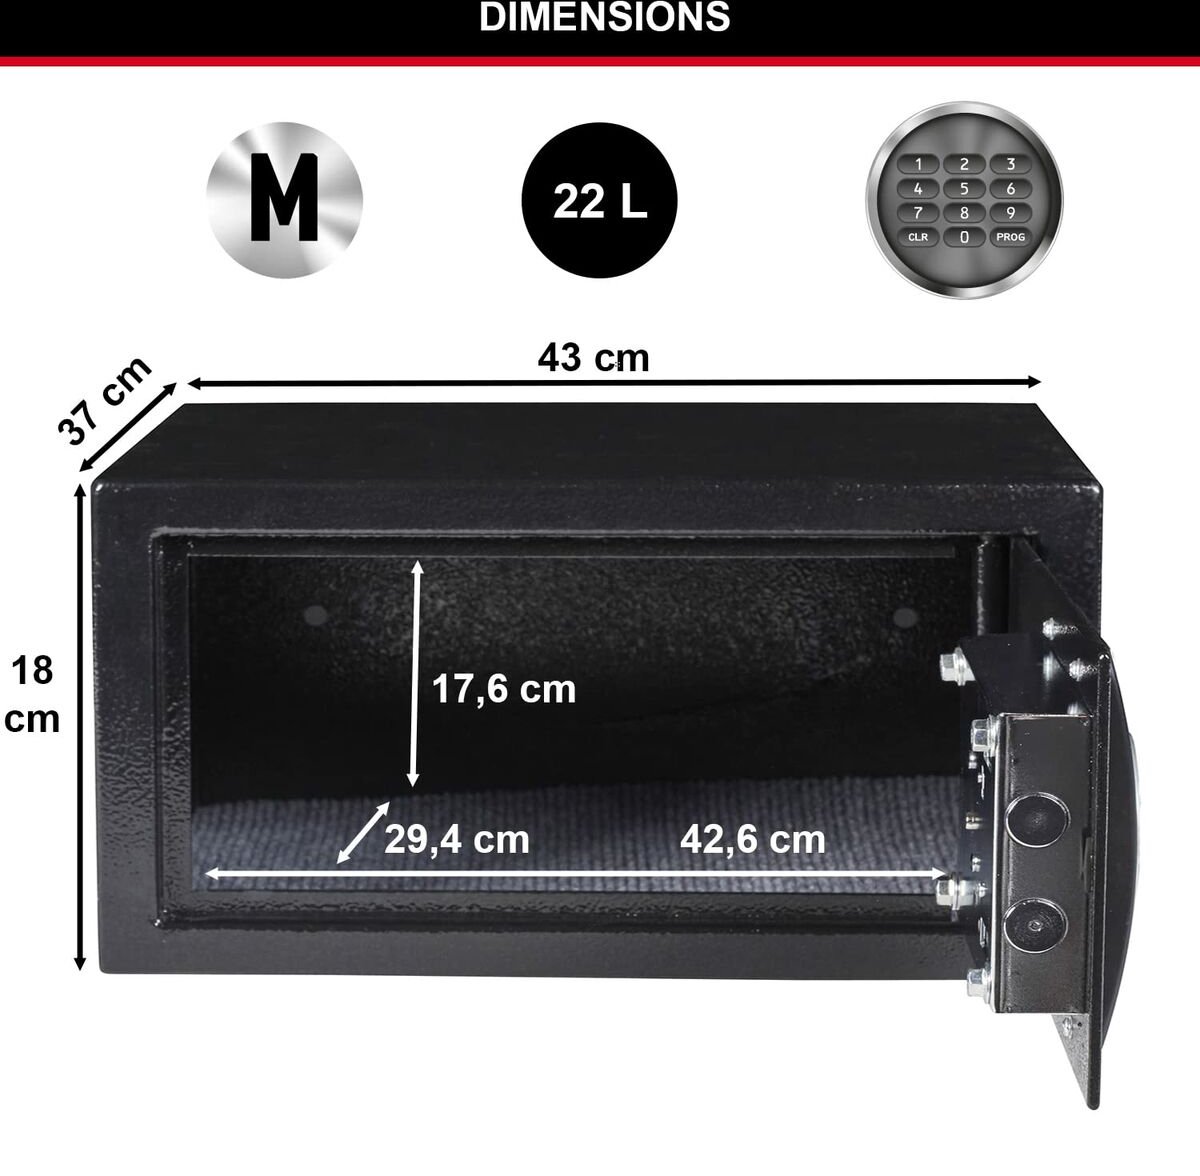 Mini coffre-fort numérique de 4,6 L en acier massif pour bureau, maison,  hôtel, mot de passe électronique avec clés d'urgence, gris, 23 x 17 x 17 cm